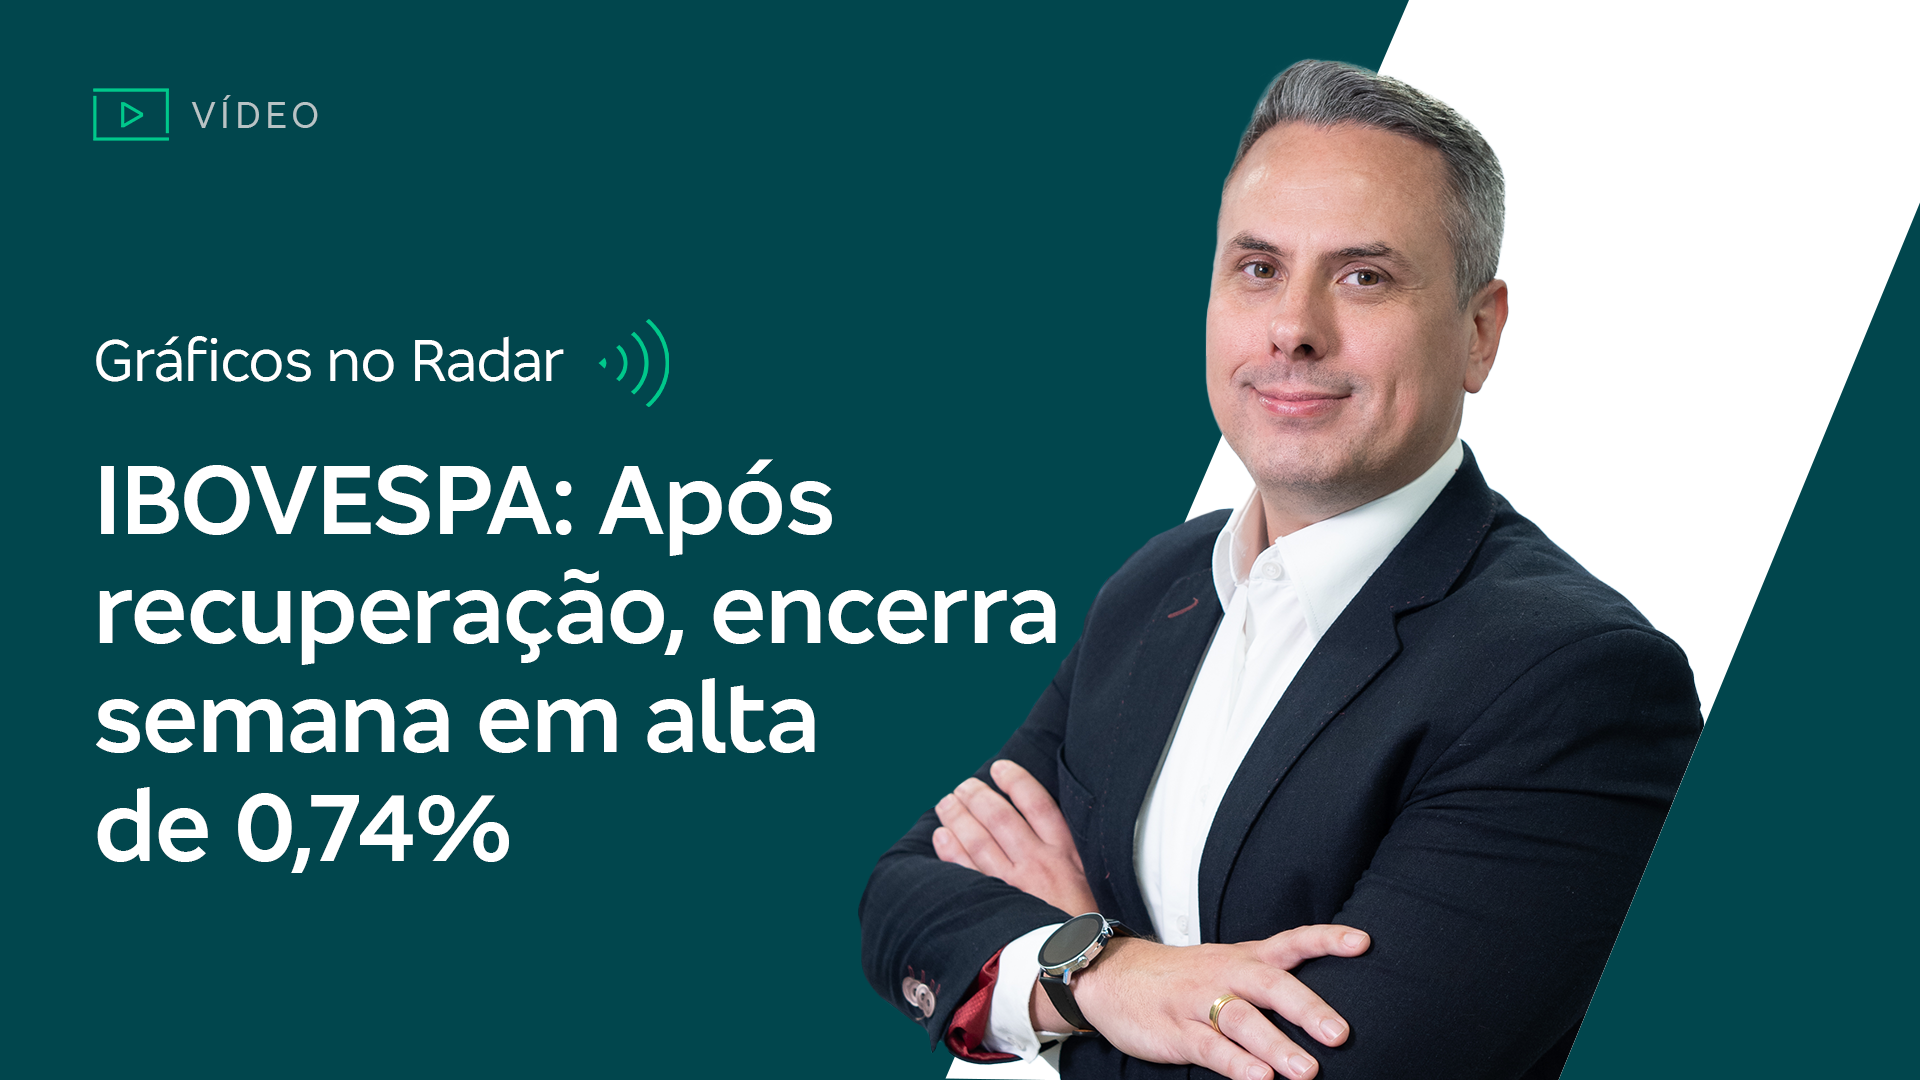 Gráficos no Radar: Após recuperação, Ibovespa encerra semana em alta de 0,74%